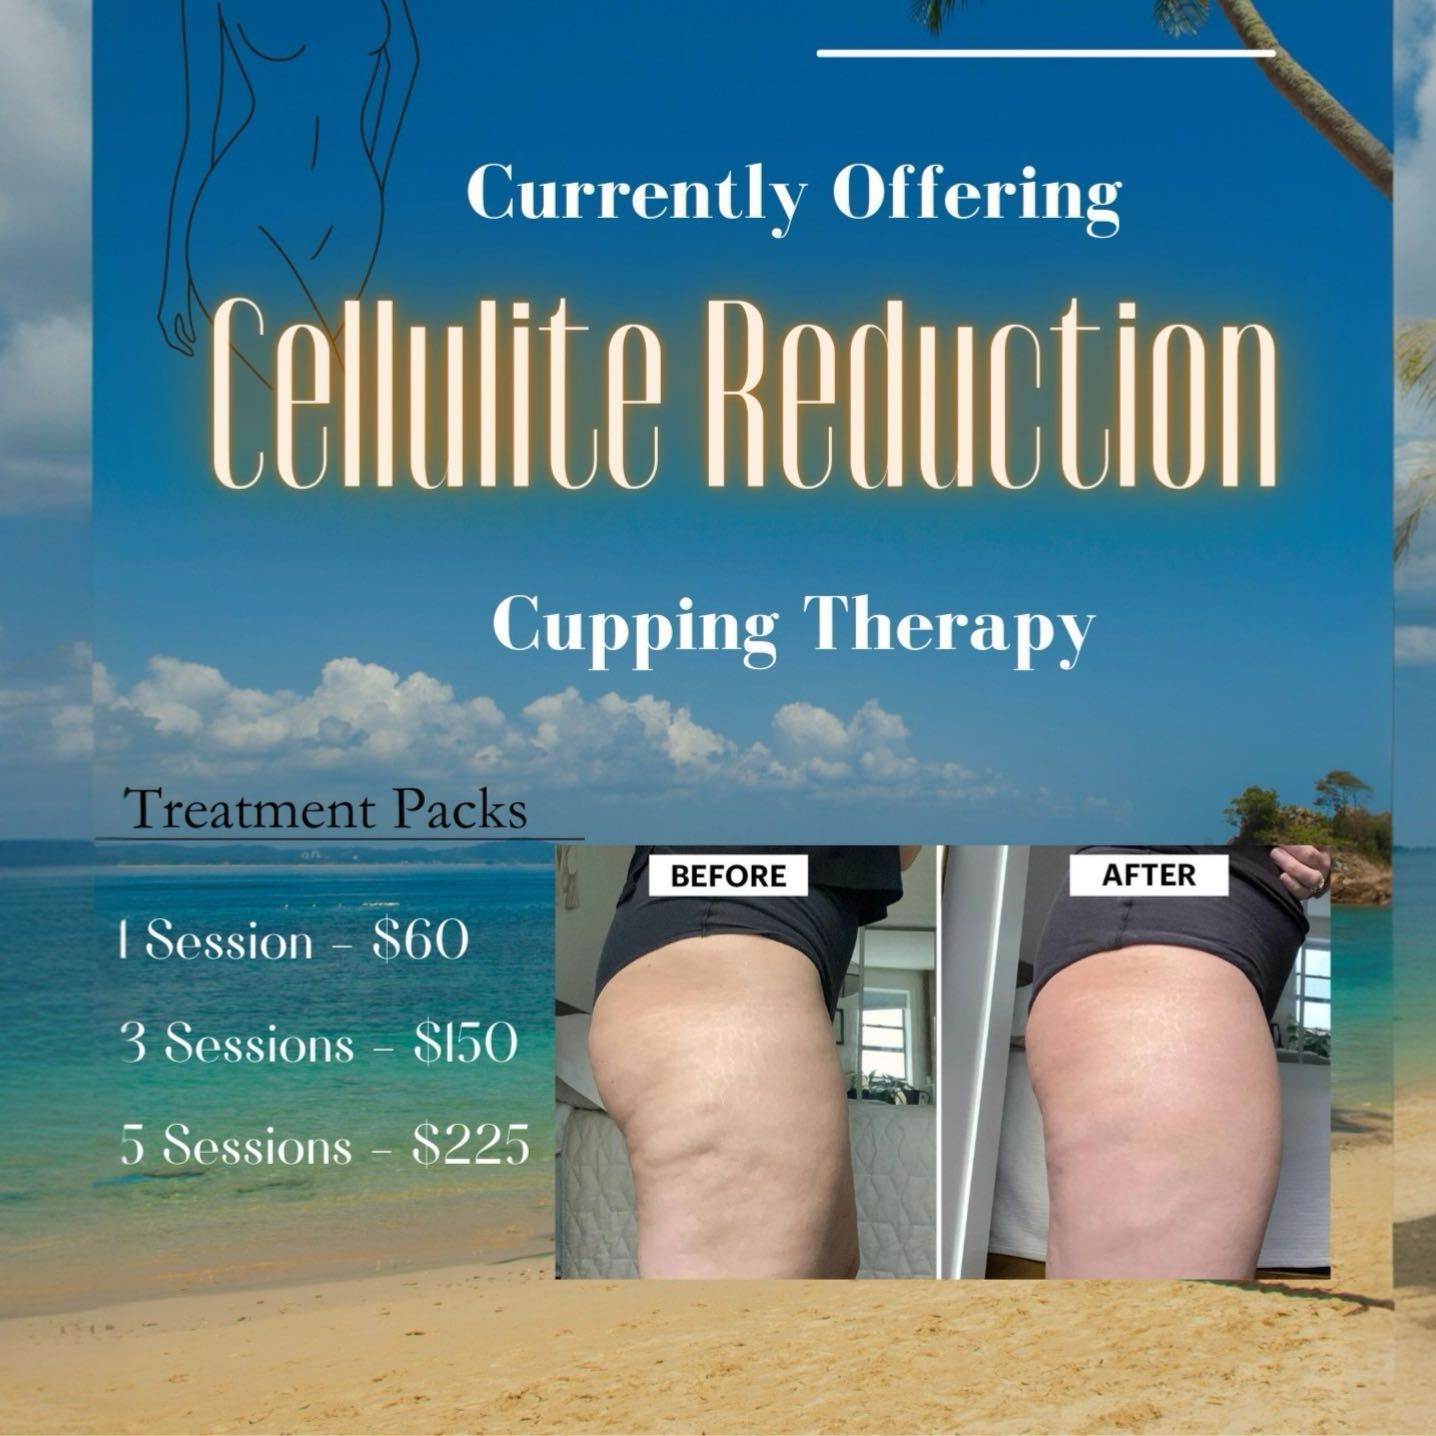 Cellulite Reduction Cupping portfolio